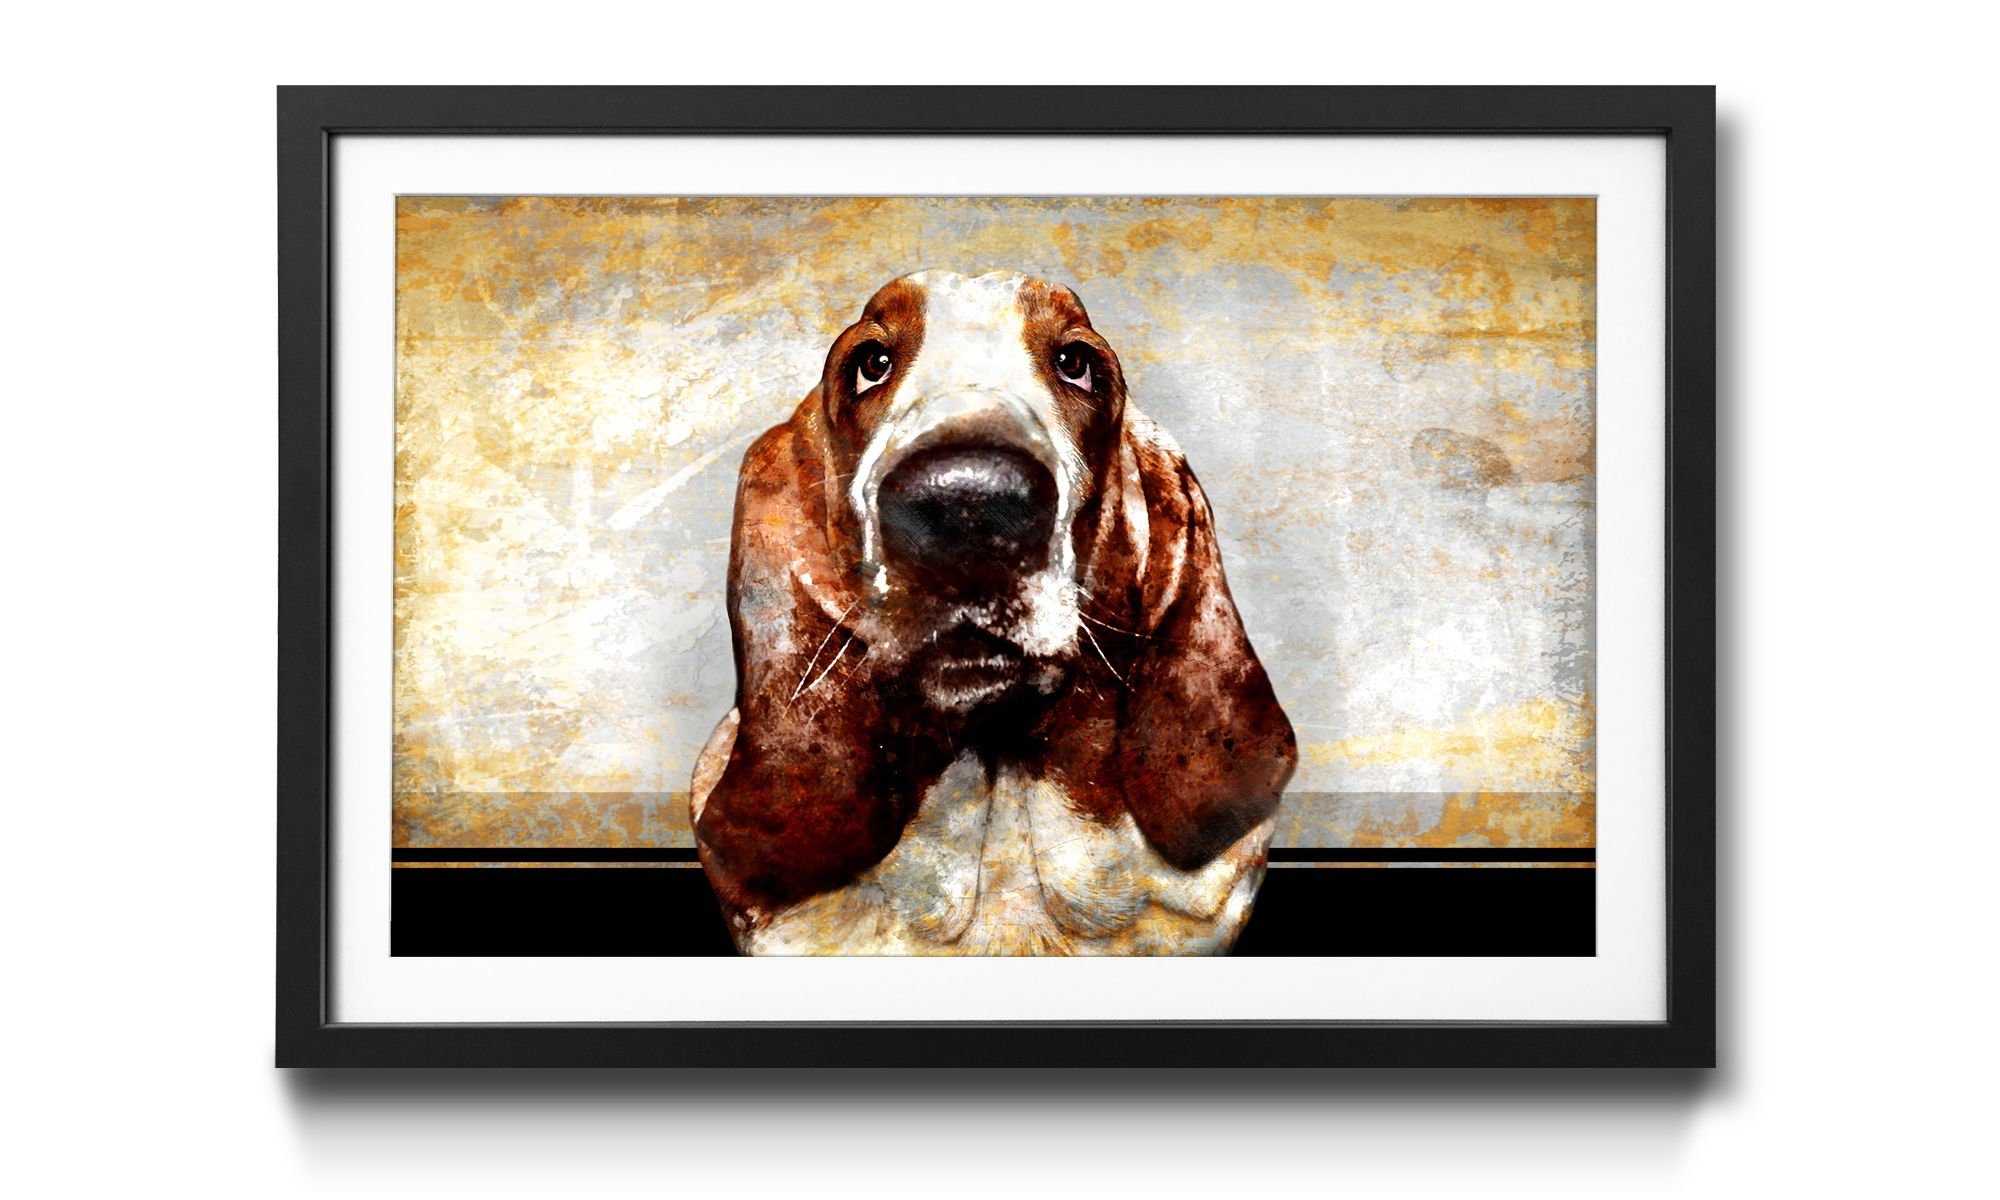 WandbilderXXL Kunstdruck Old Dog, Hund, Wandbild, in 4 Größen erhältlich